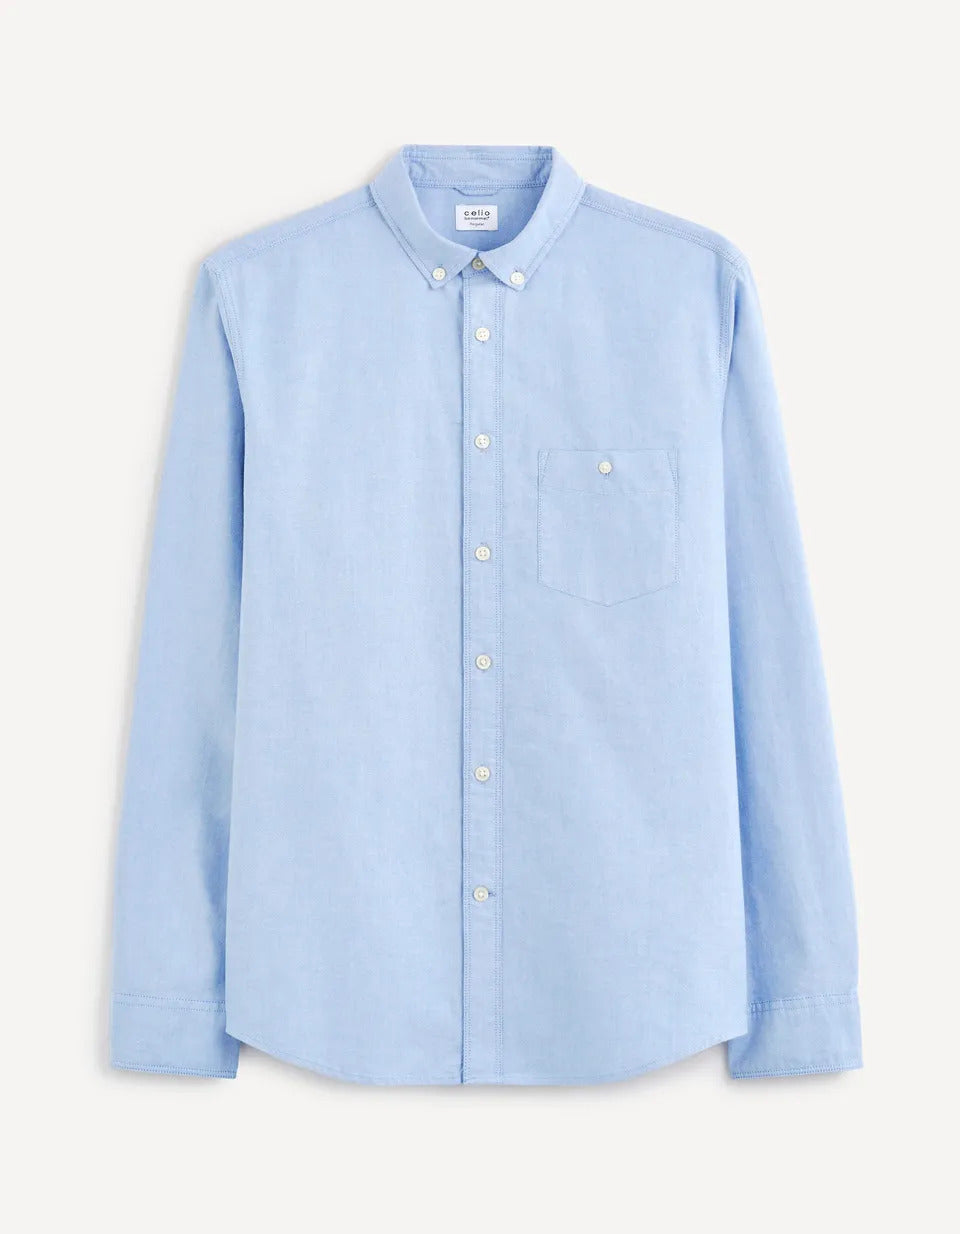 Regular-Fit 100% Cotton Oxford Shirt - Light Blue - 03